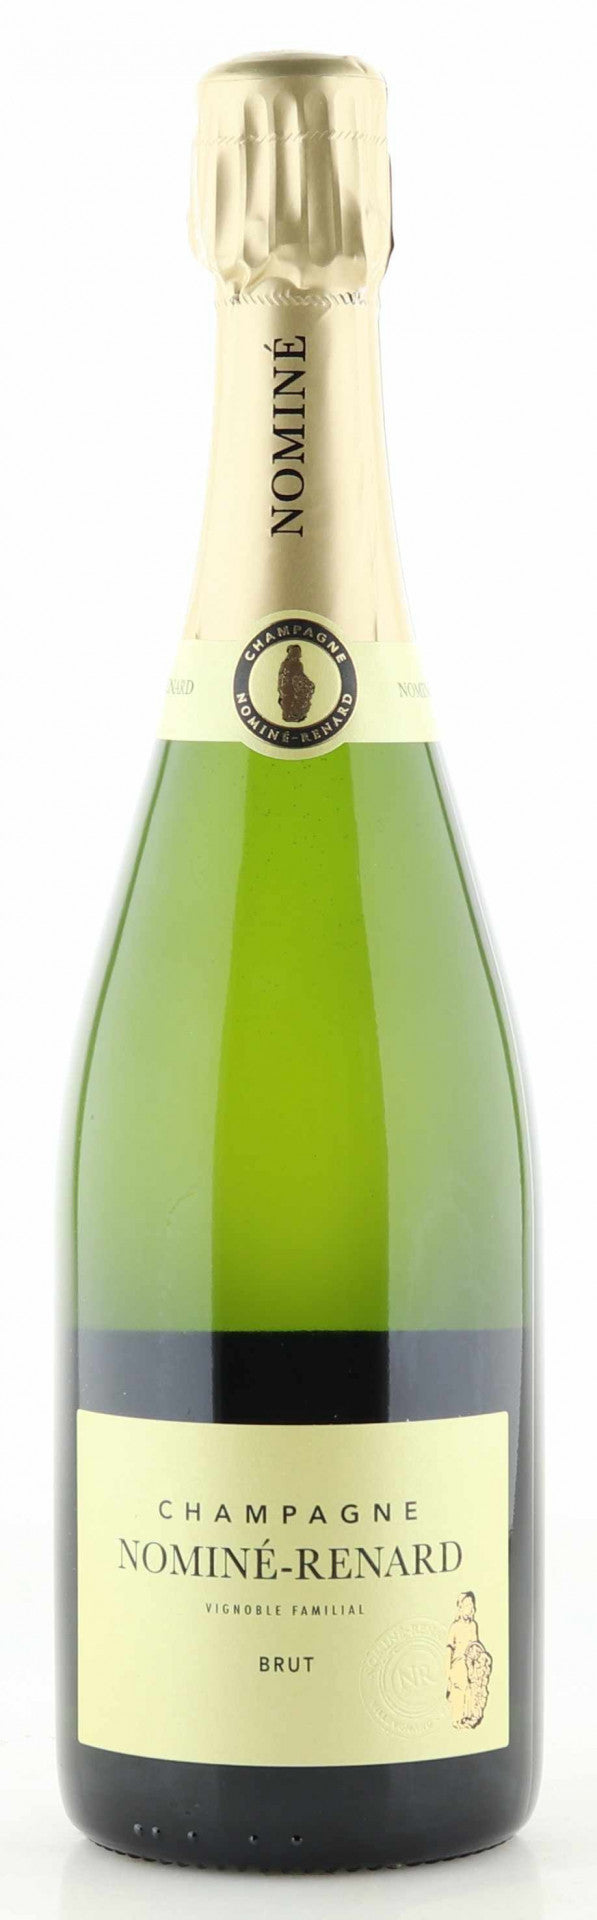 Nominé Renard Champagner Brut - Herb